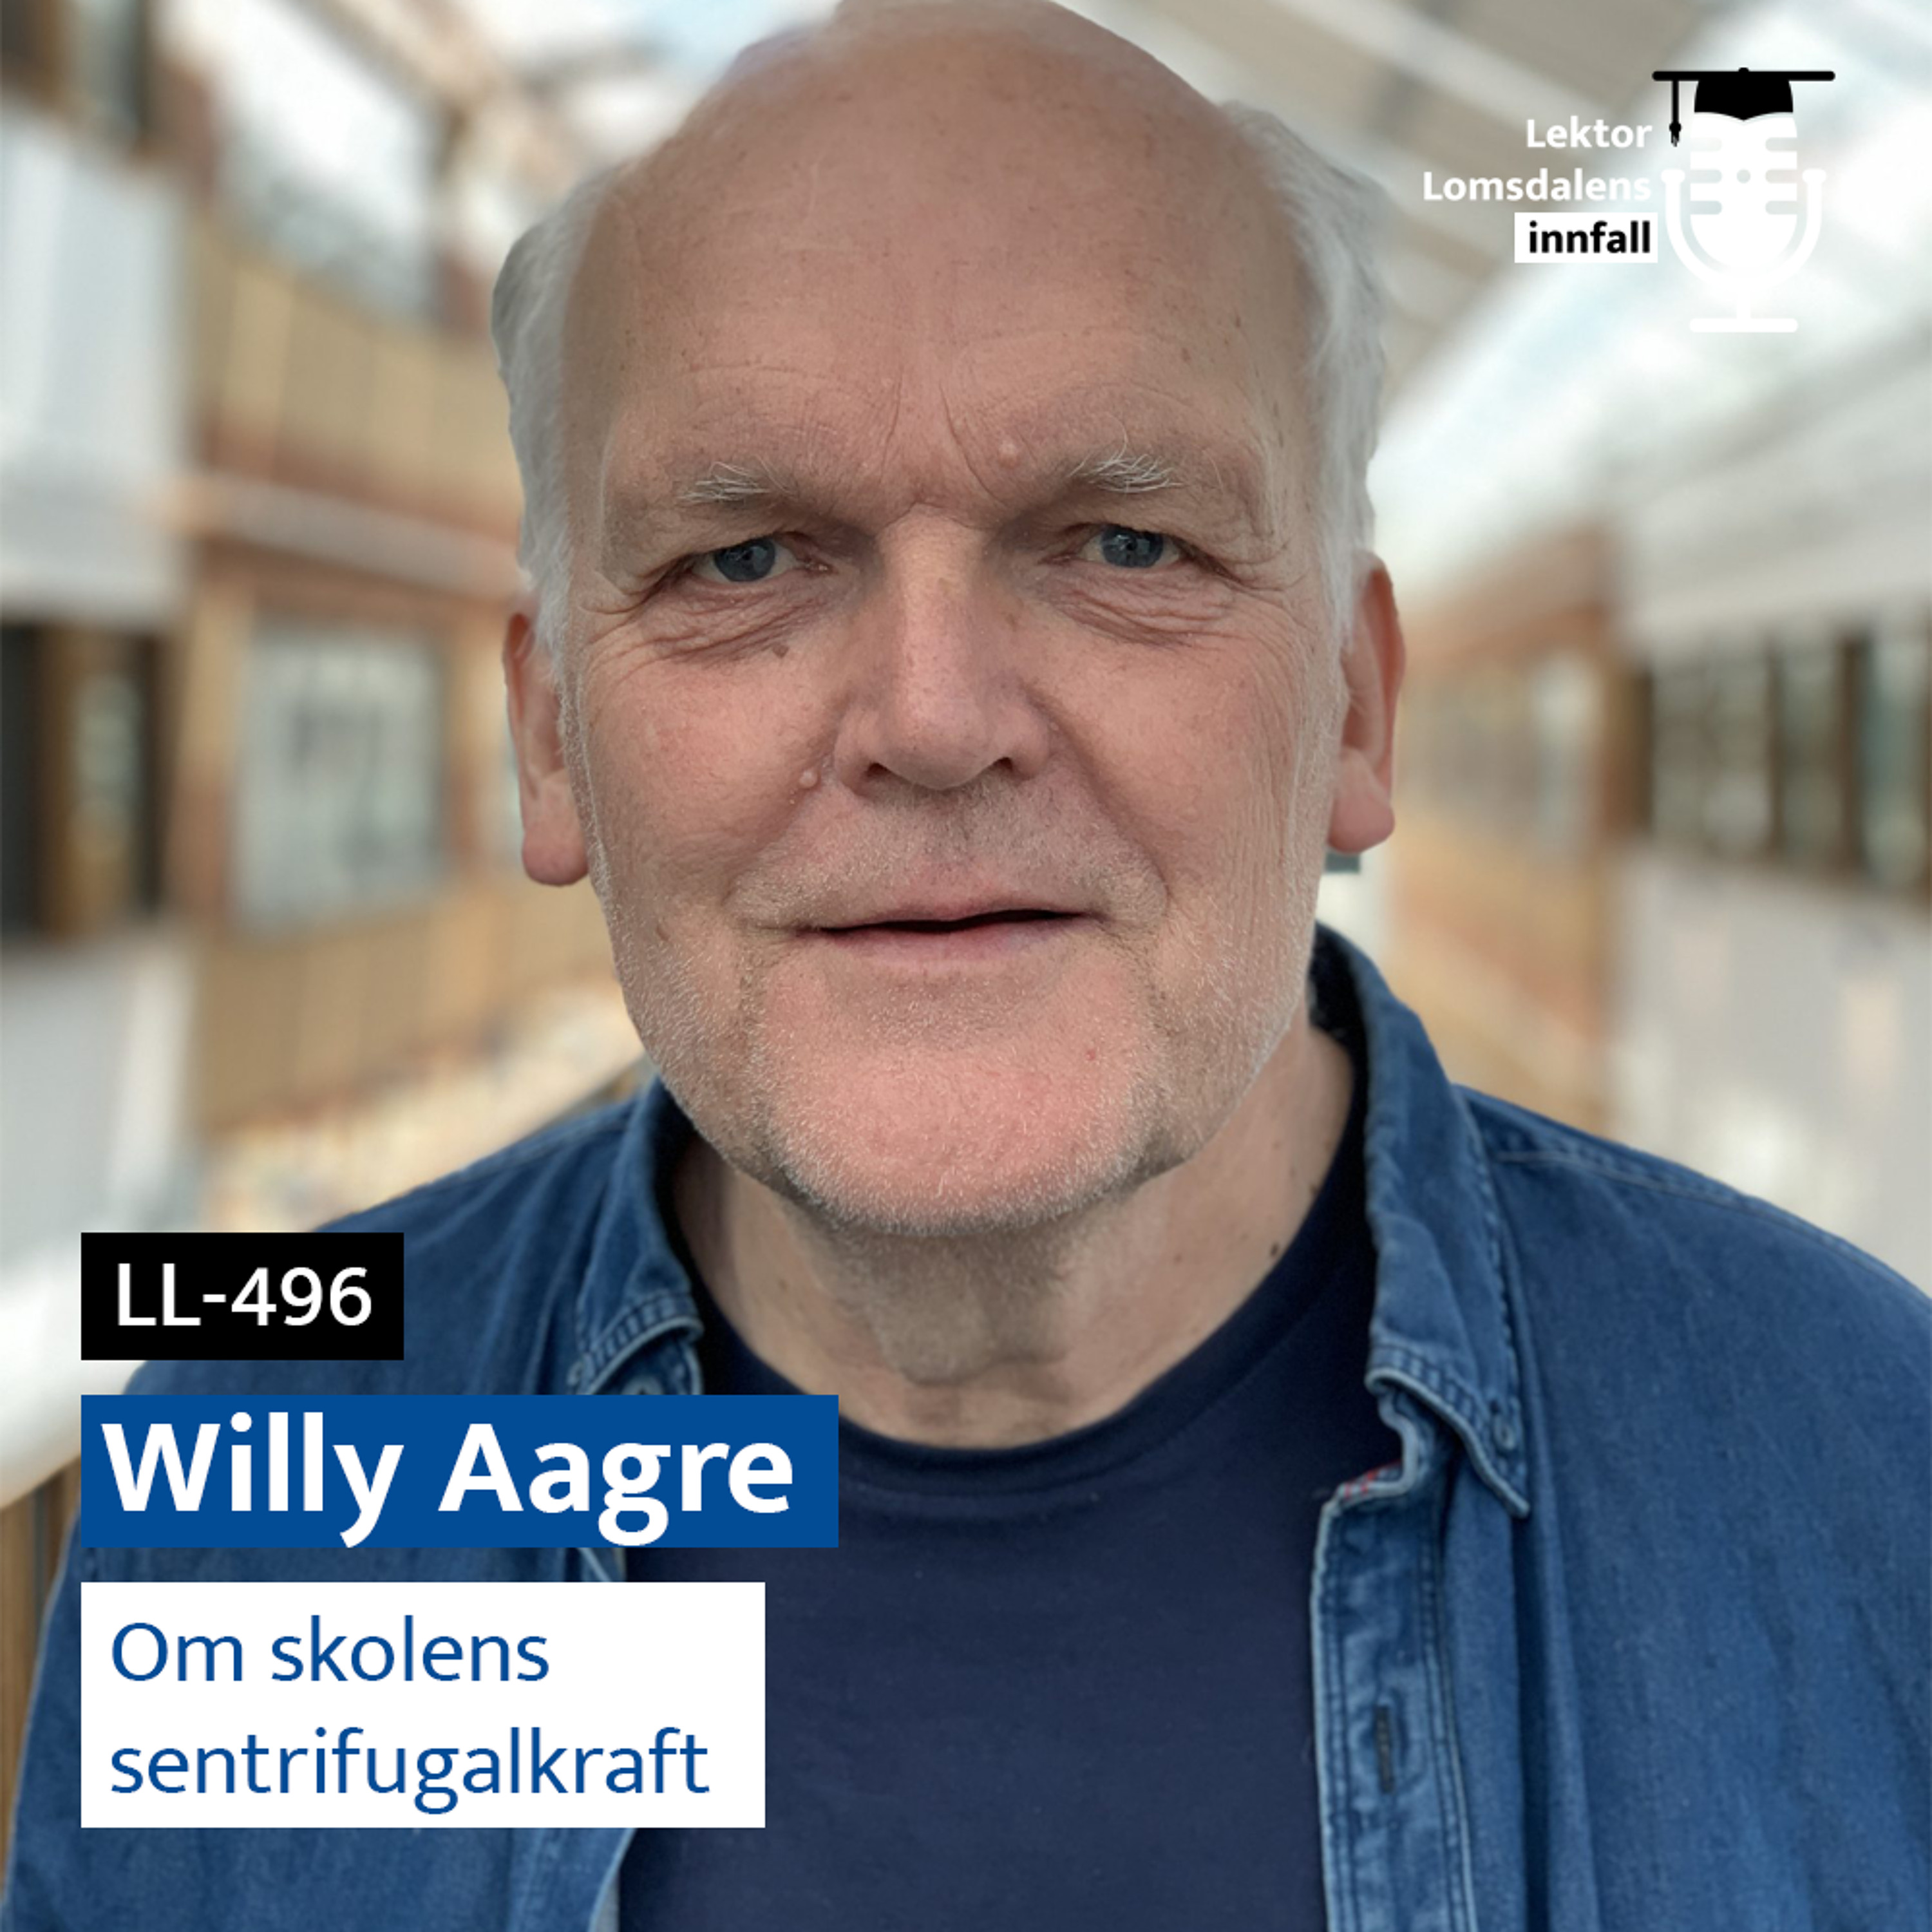 LL-496: Willy Aagre om skolens sentrifugalkraft